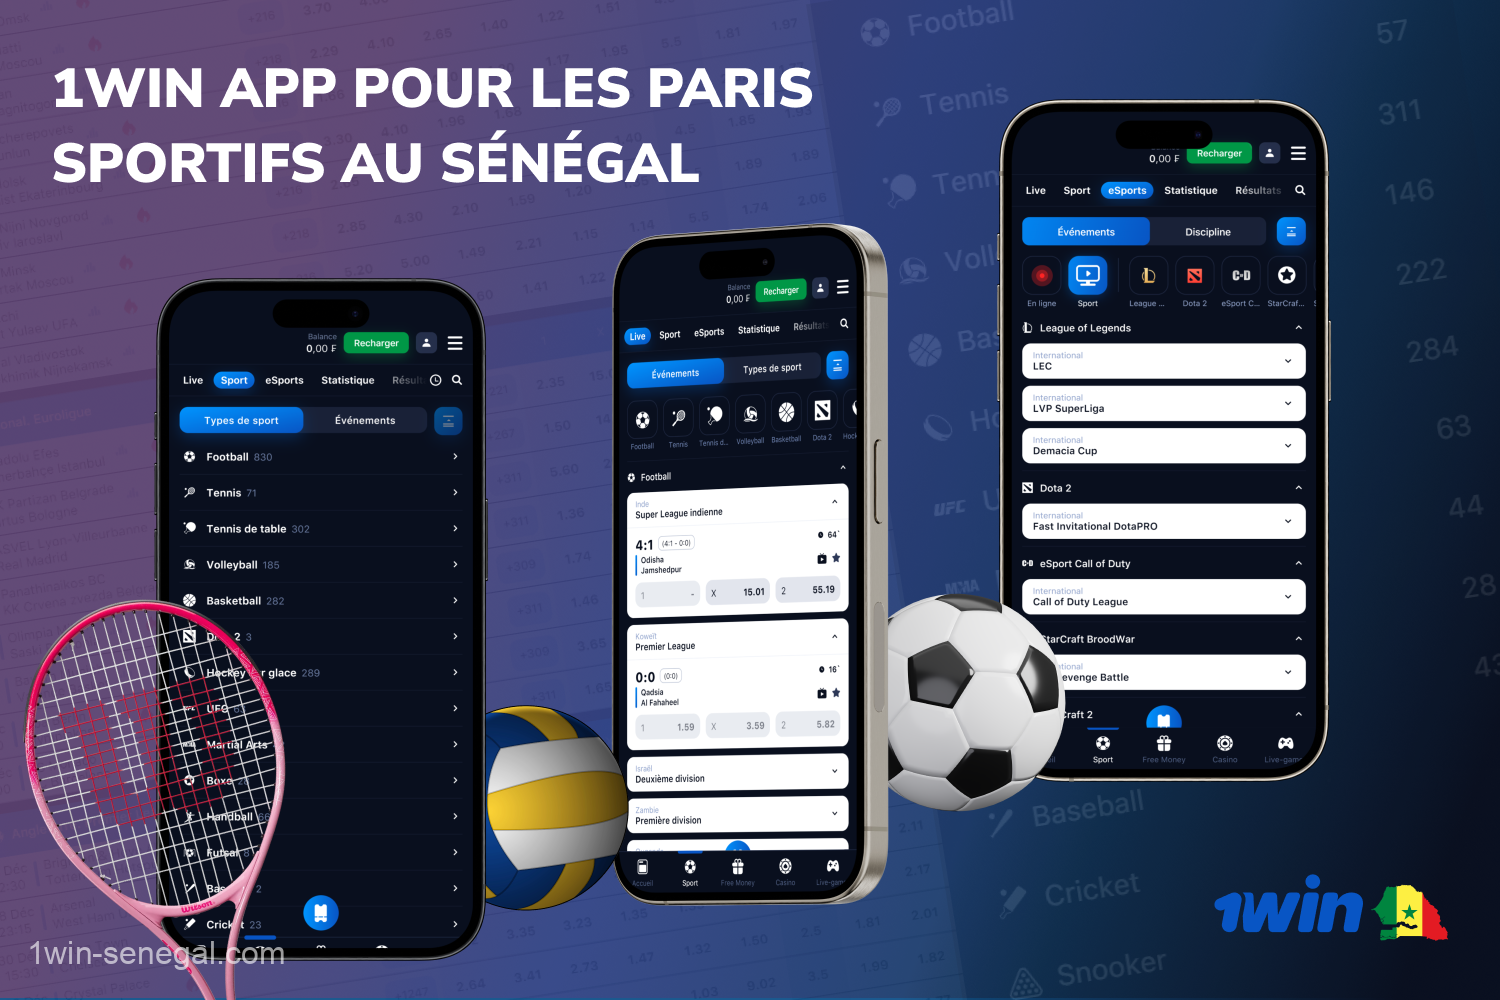 Les parieurs du Sénégal peuvent parier confortablement sur des matchs sportifs dans plus de 30 sports dans l'application mobile 1win pour Android et iOS